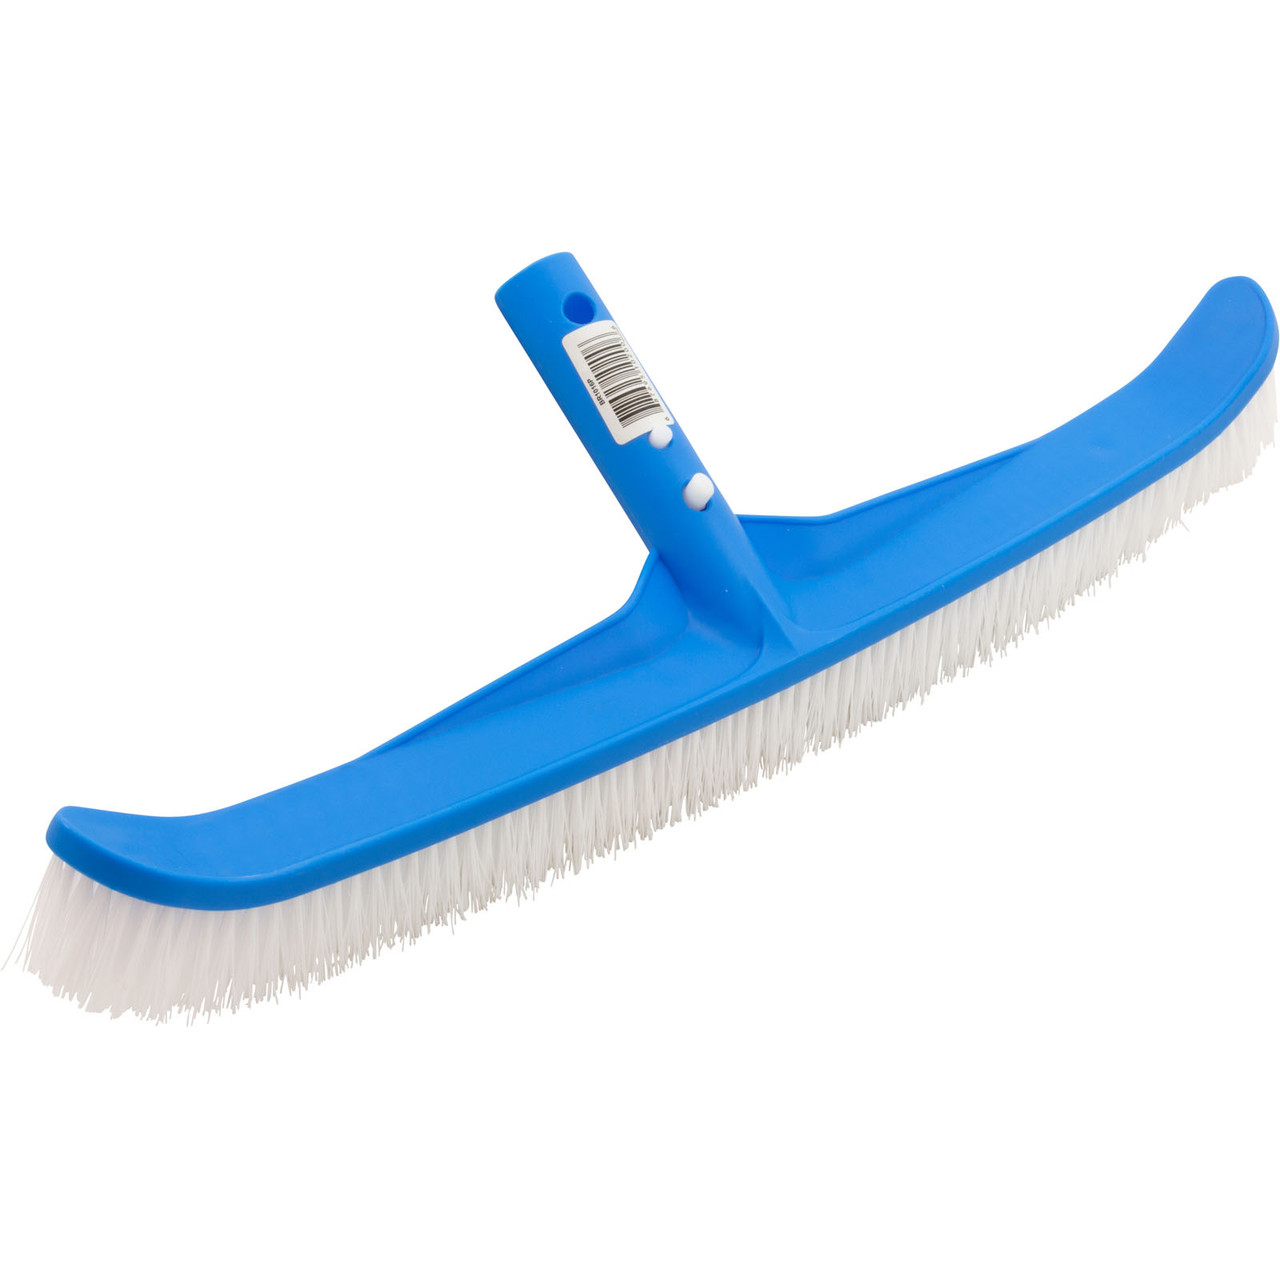 Pentair R111556 - Multi-Purpose Scrub Brush